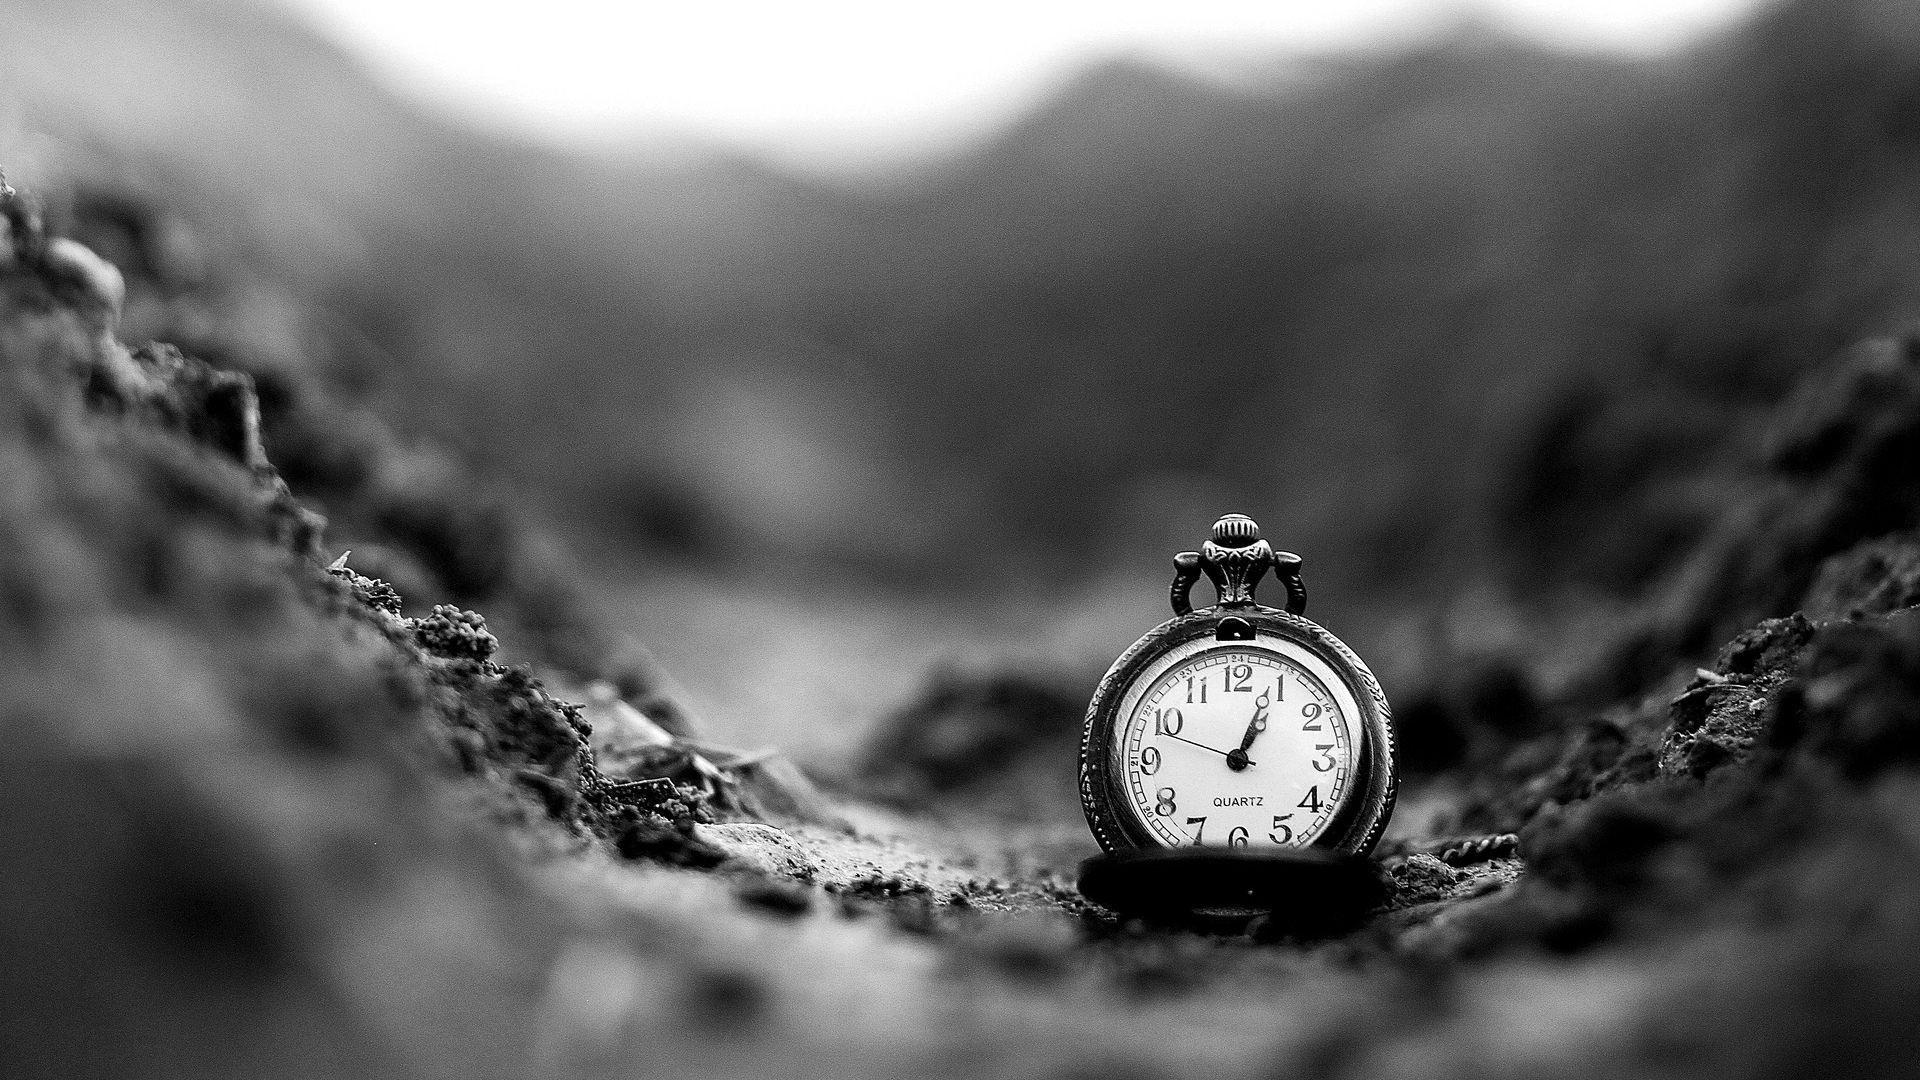 orologio wallpaper hd,orologio,nero,fotografia di still life,fotografia,bianca